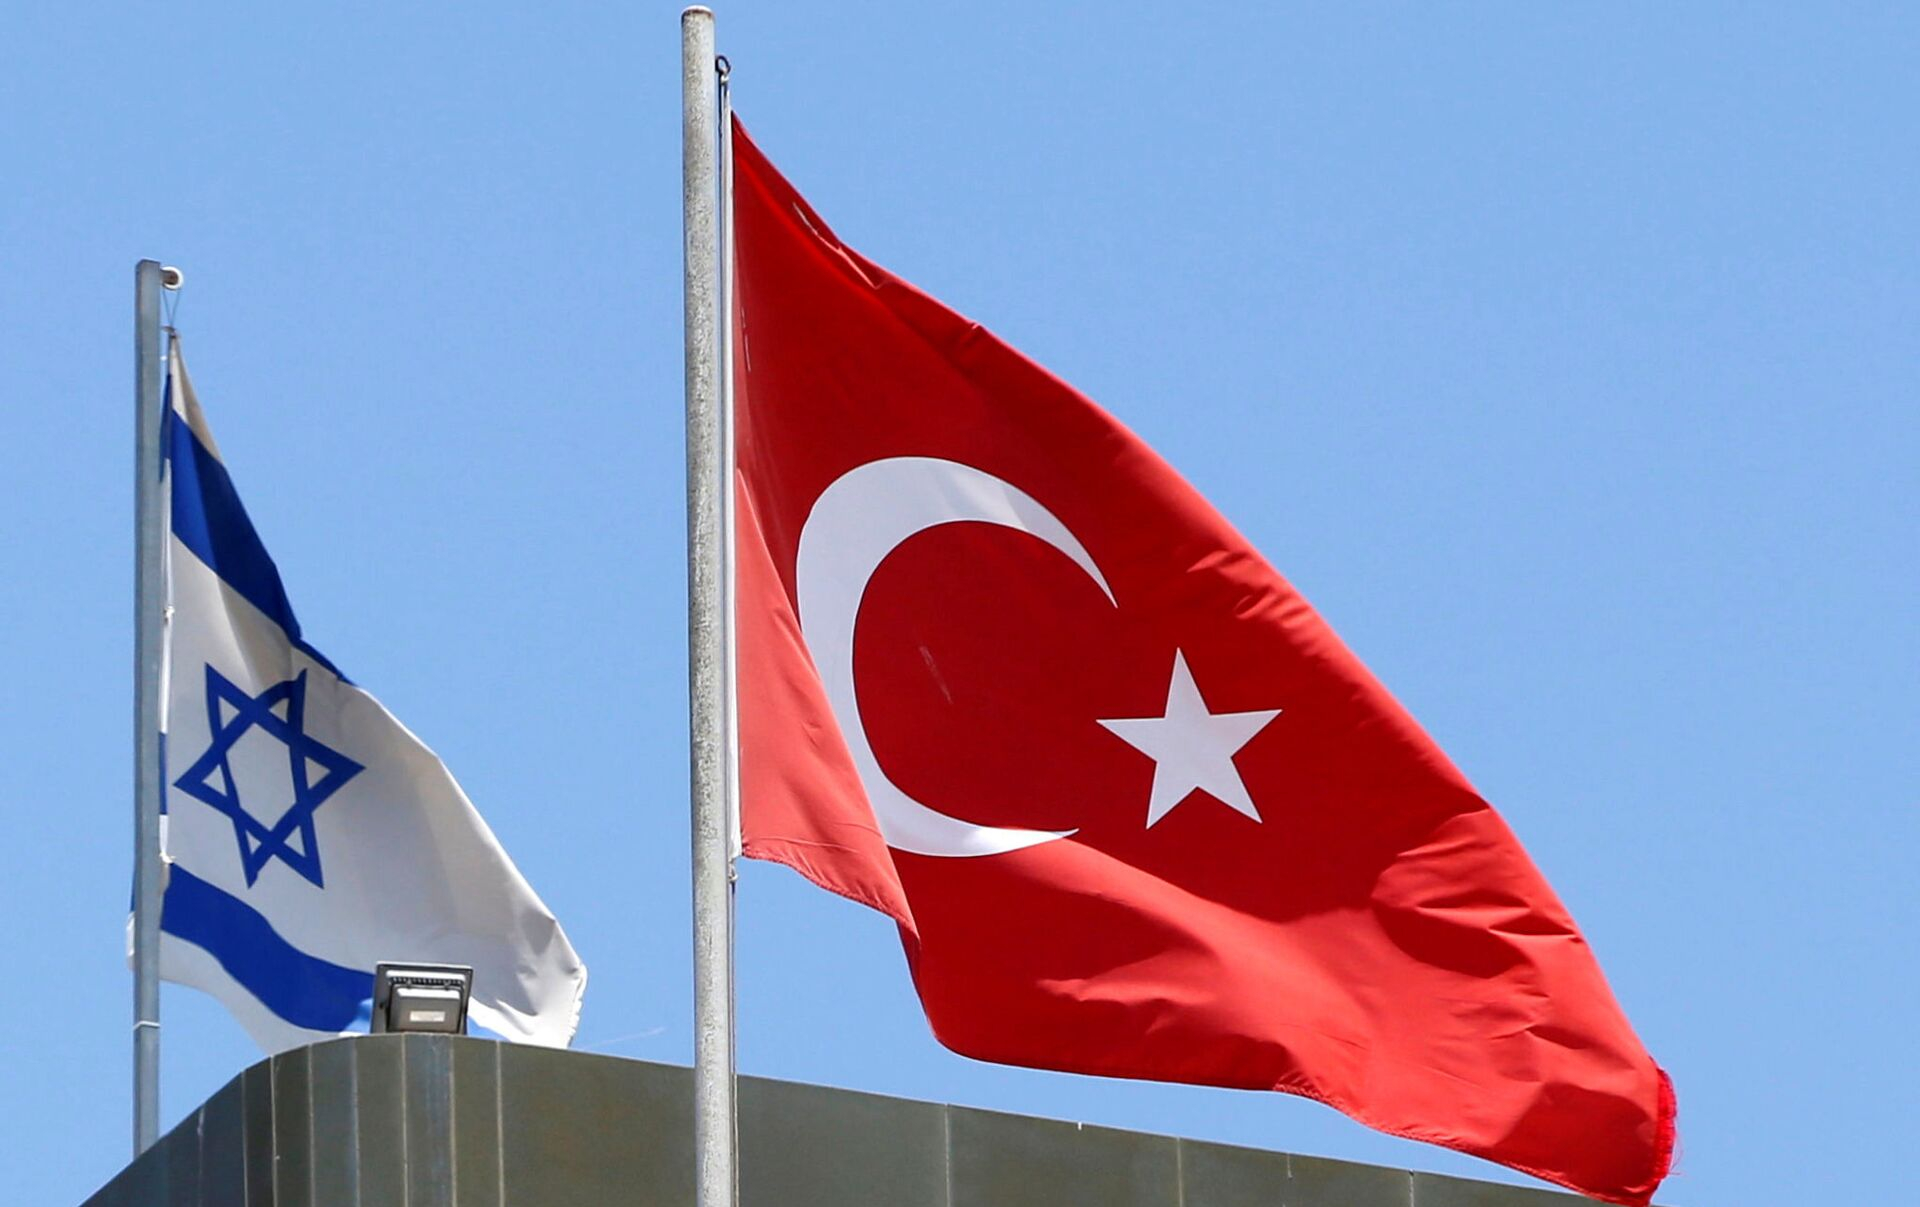 İsrail Türkiyəyə başsağlığı verdi: “Qəlbimiz və dualarımız türk xalqının yanındadır” - FOTO